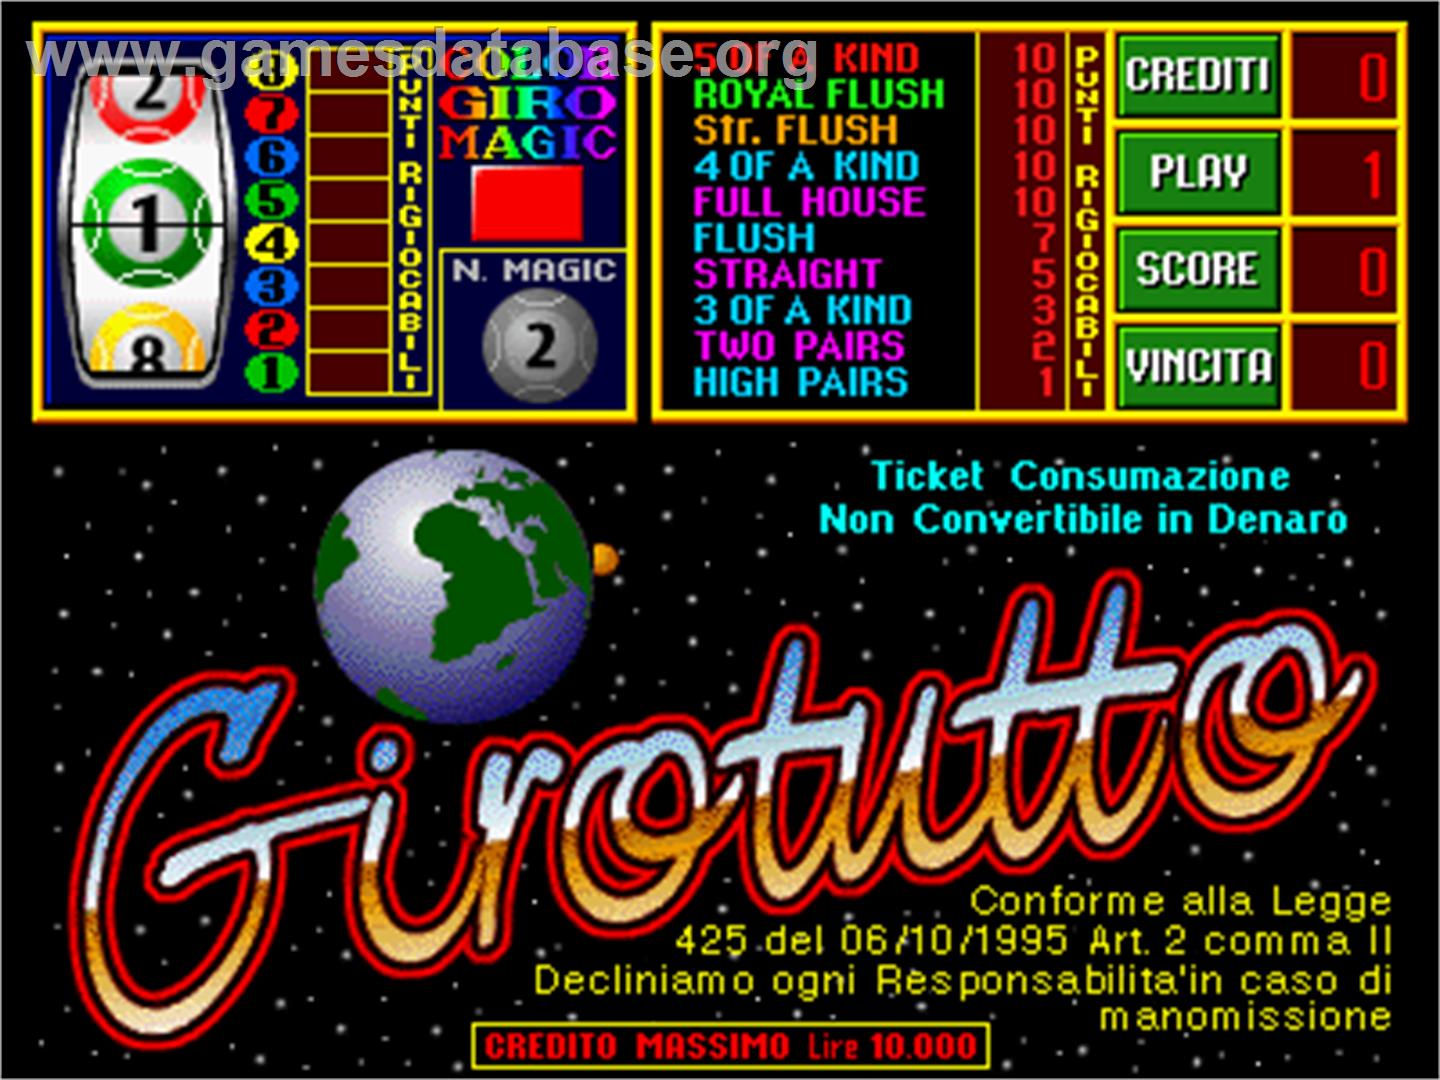 GiroTutto - Arcade - Artwork - Title Screen